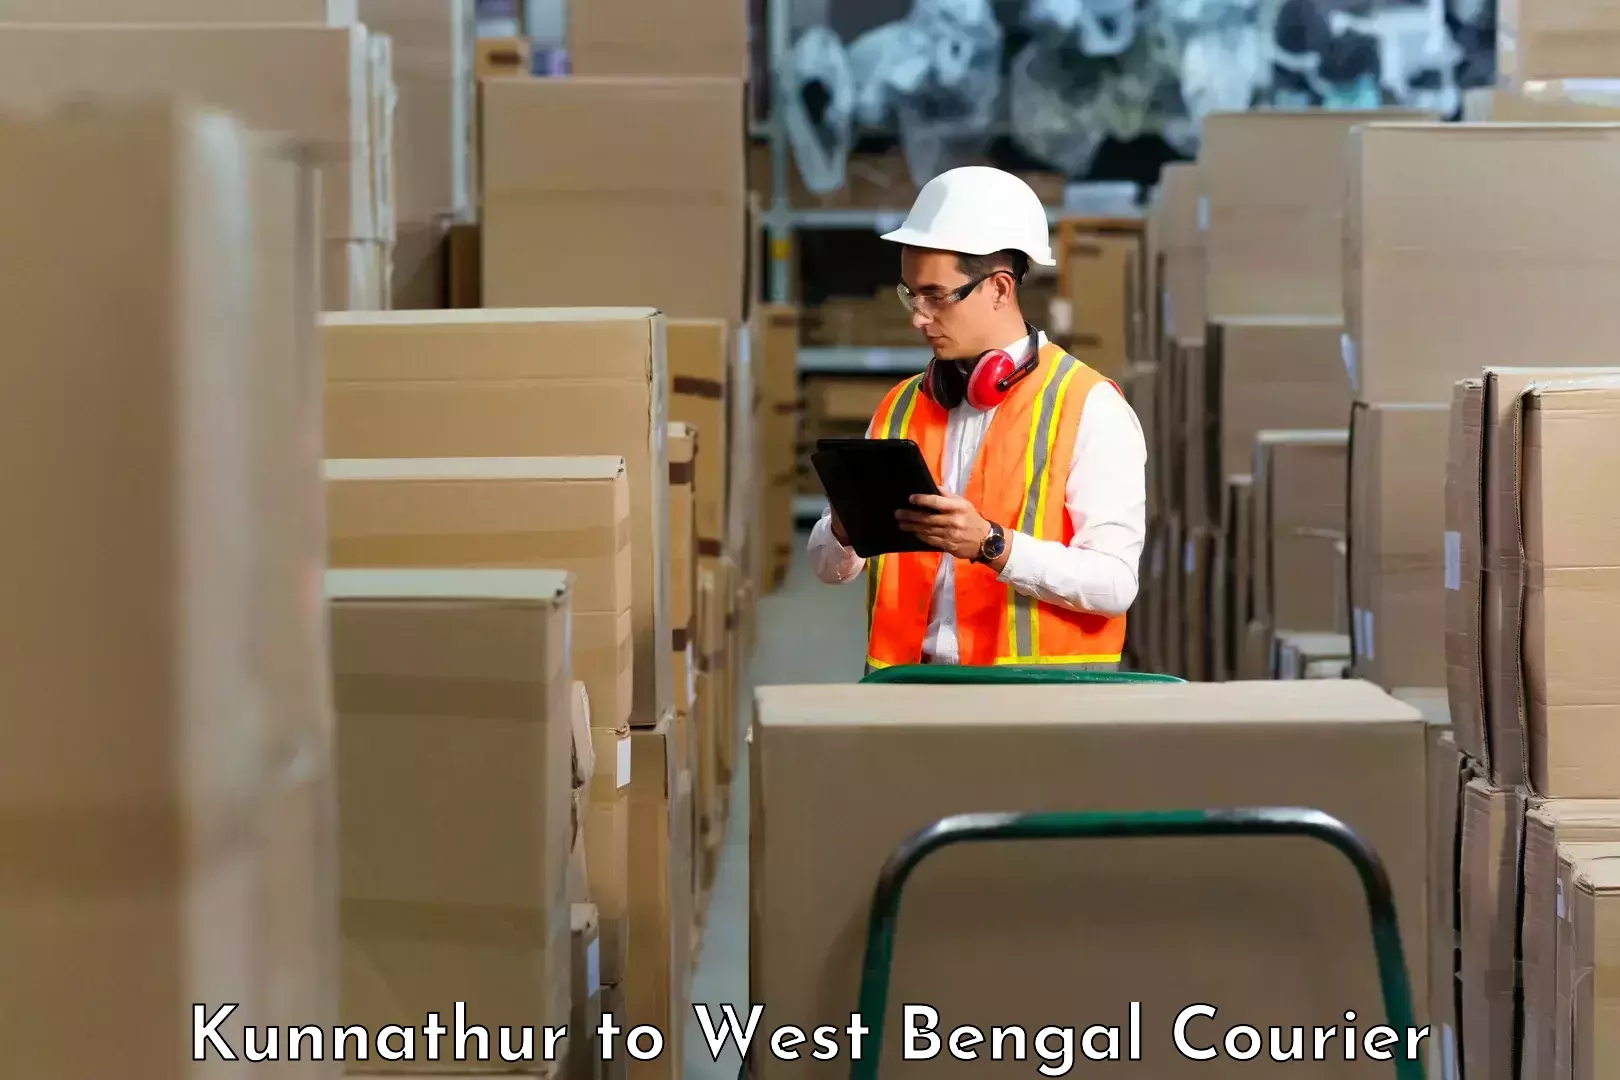 Next-generation courier services Kunnathur to Mirik